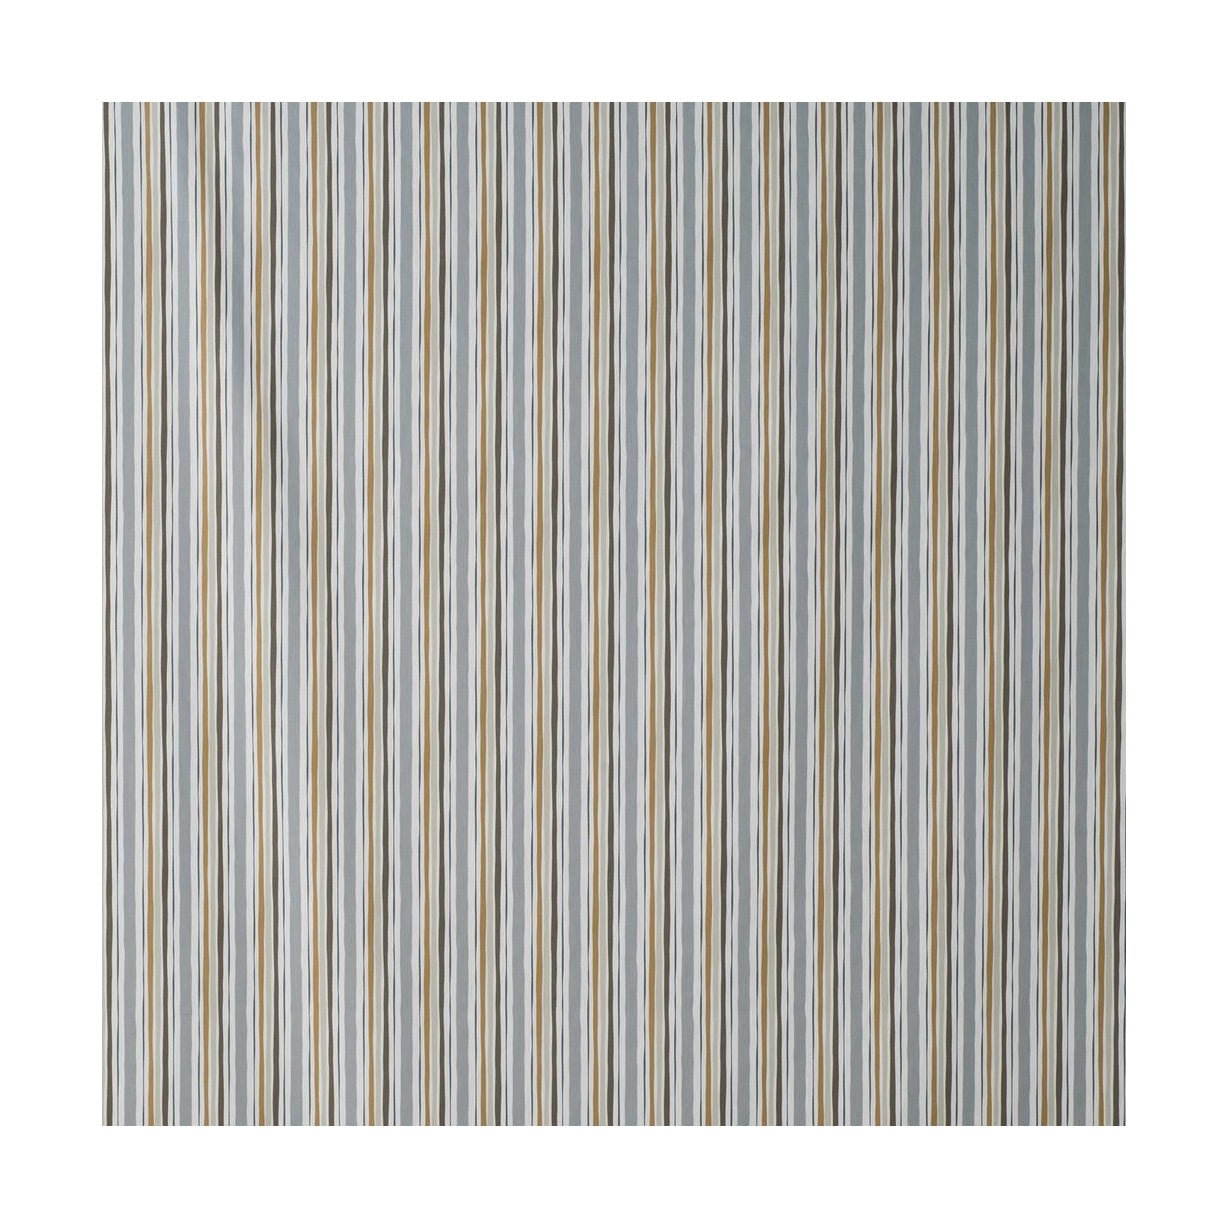 Spira Randi Szerokość tkaniny 150 cm (cena za metr), brązowy